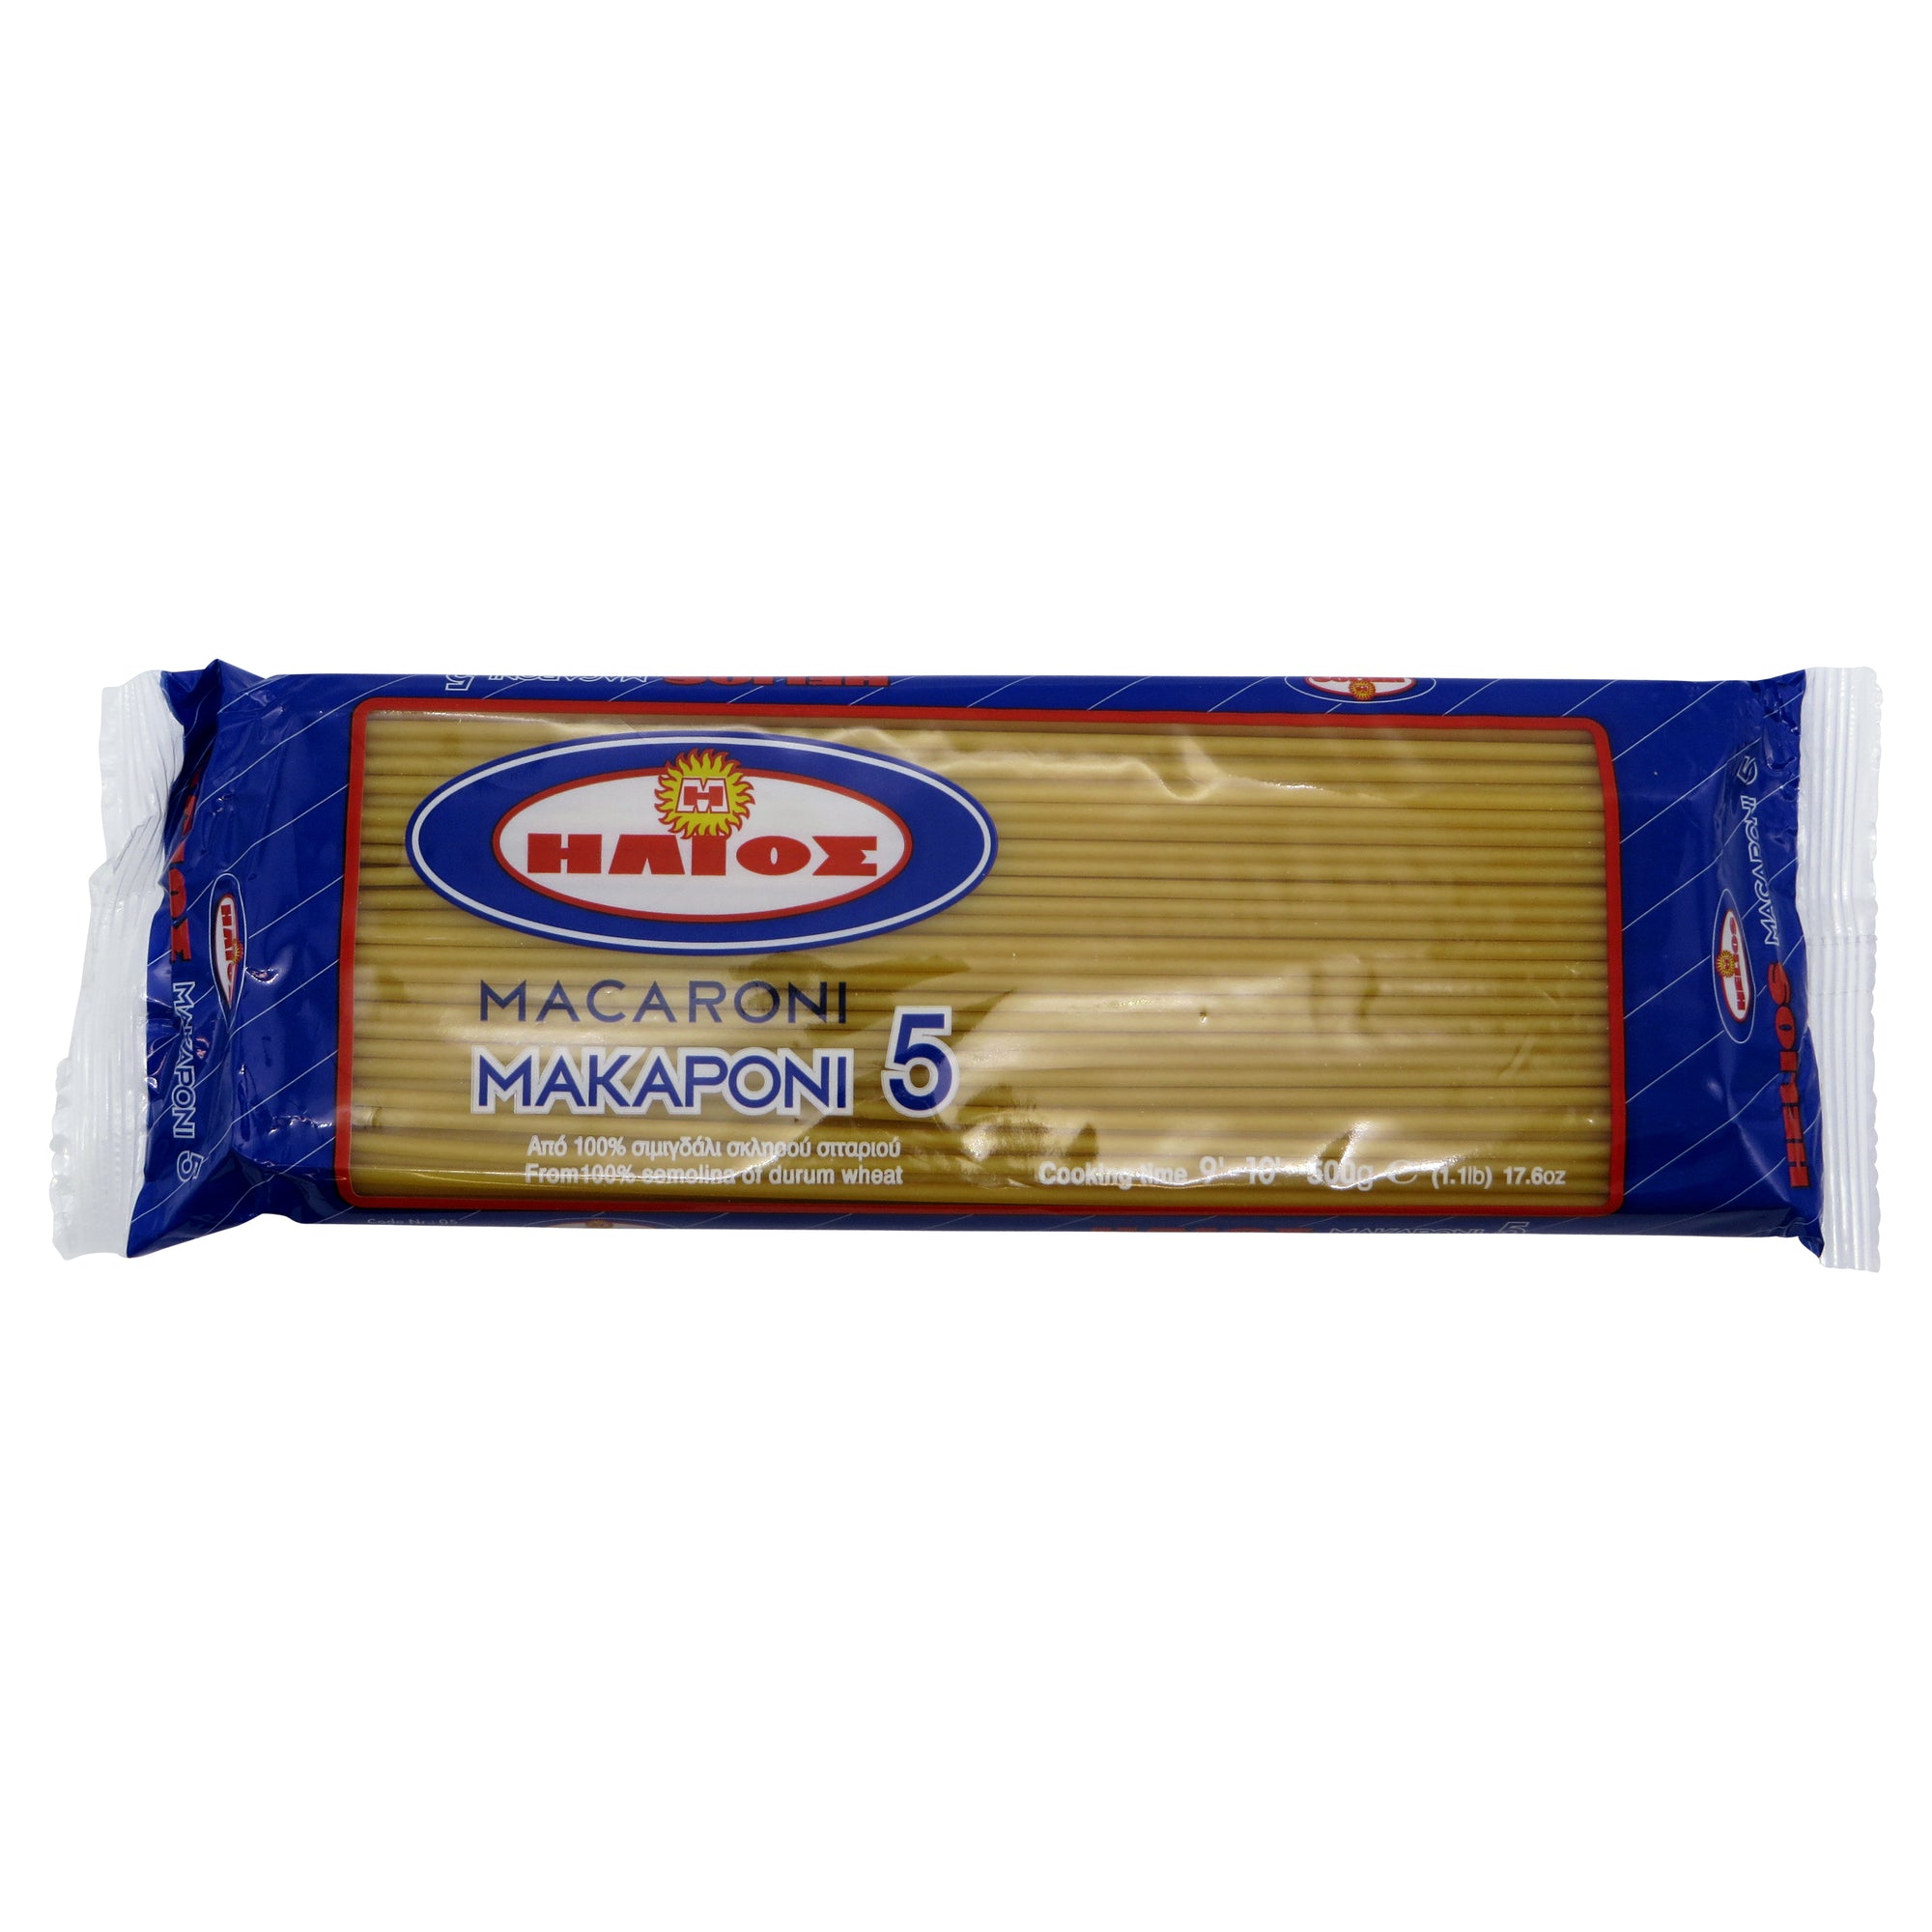 'Helios' Macaroni #5 500g